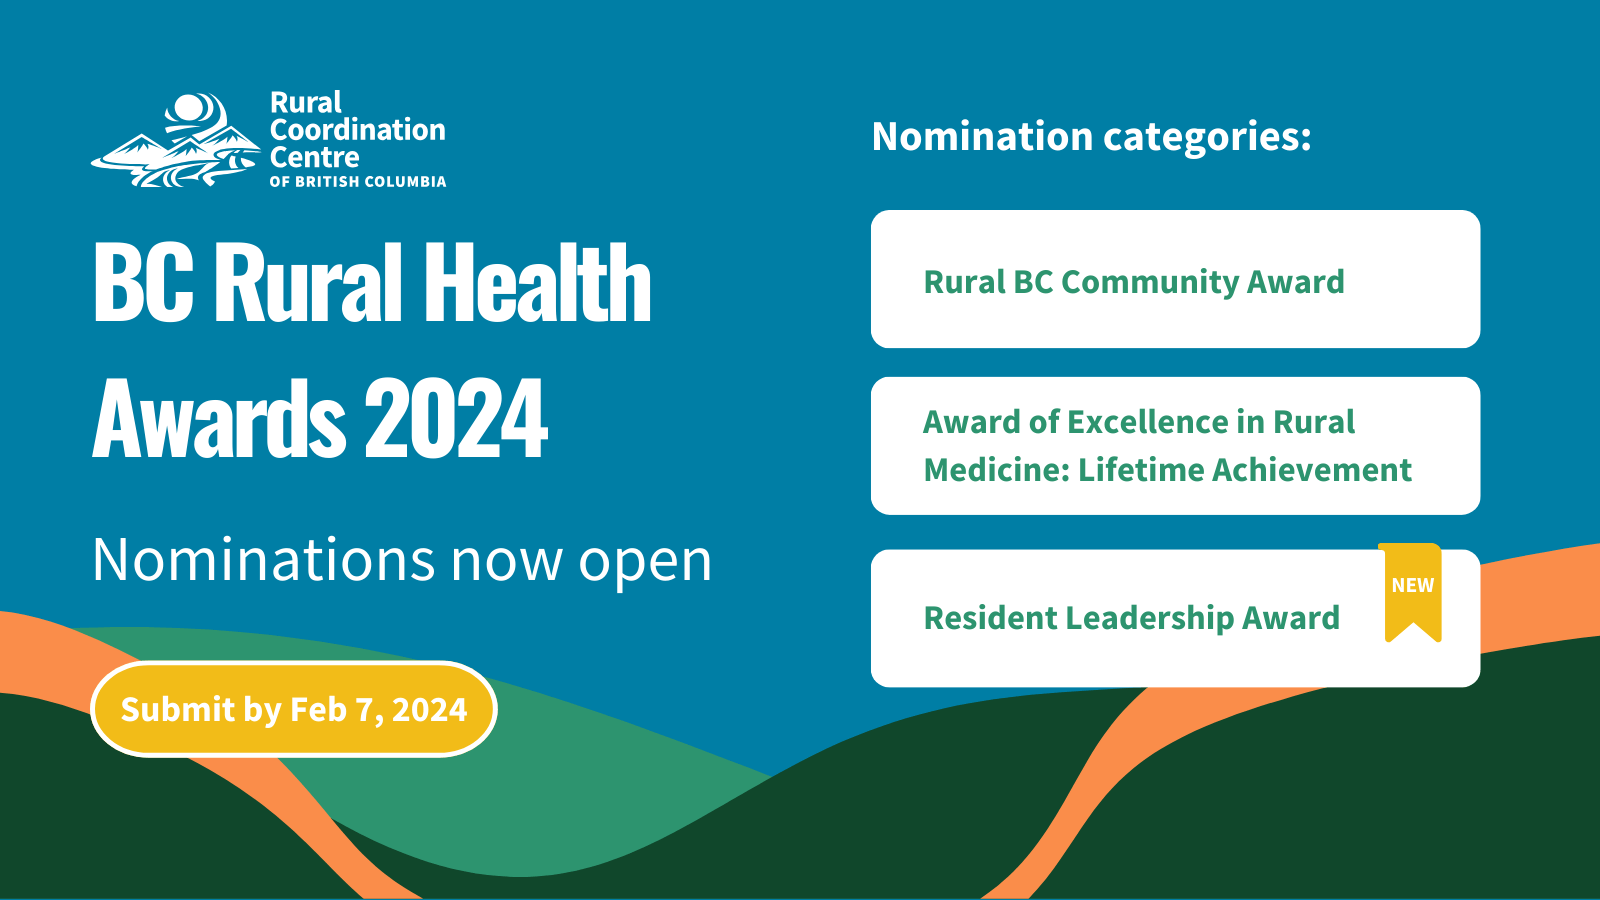 BC Rural Health Awards 2024